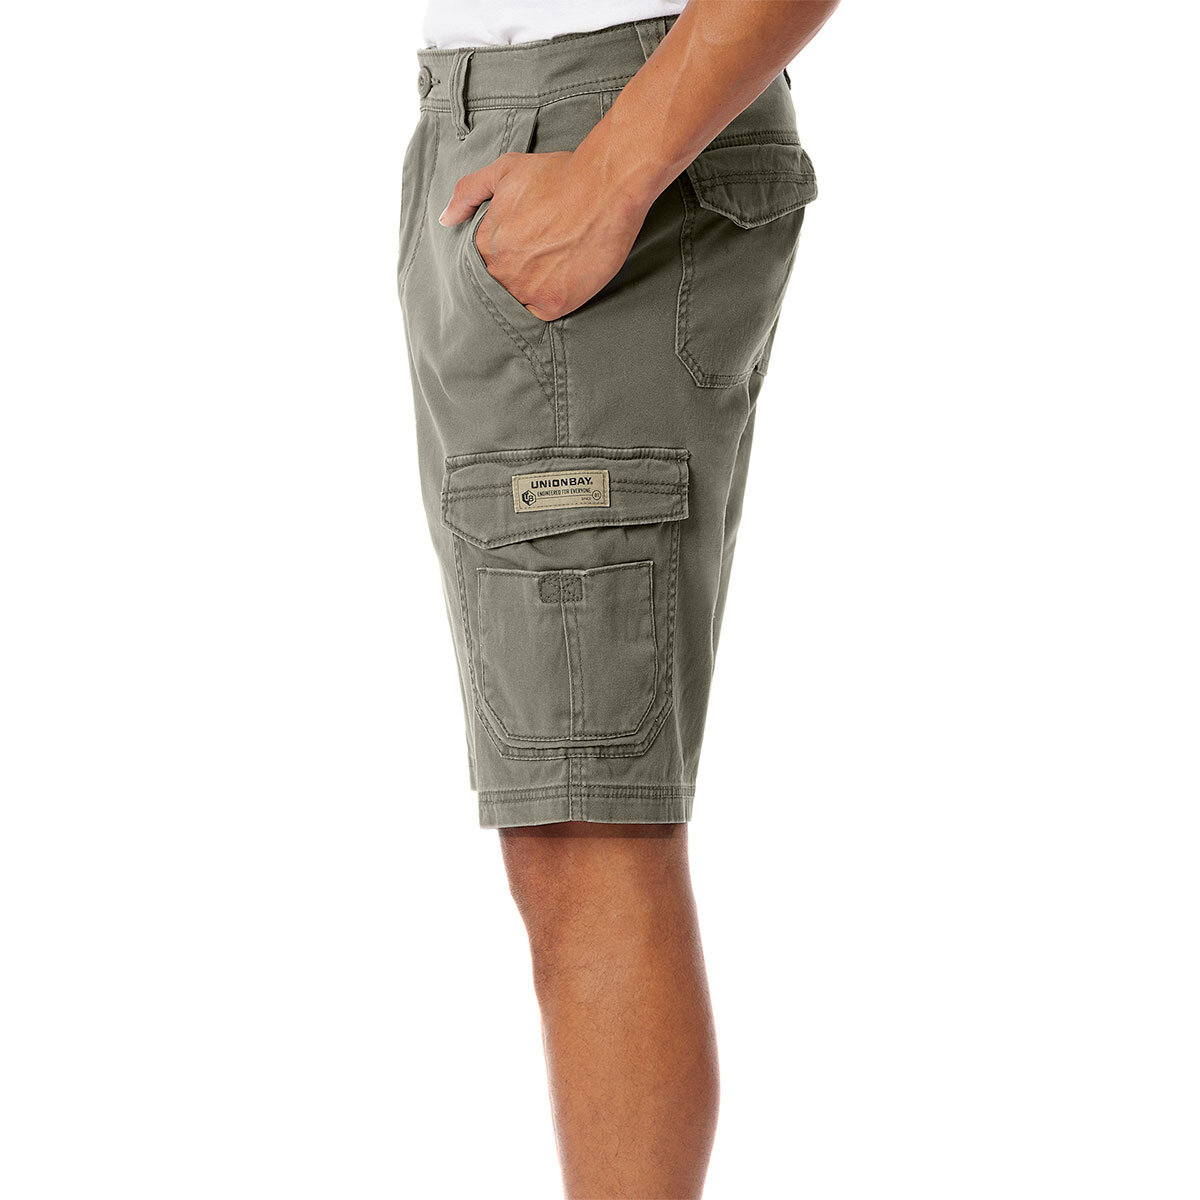 Lifestyle image of side of shorts